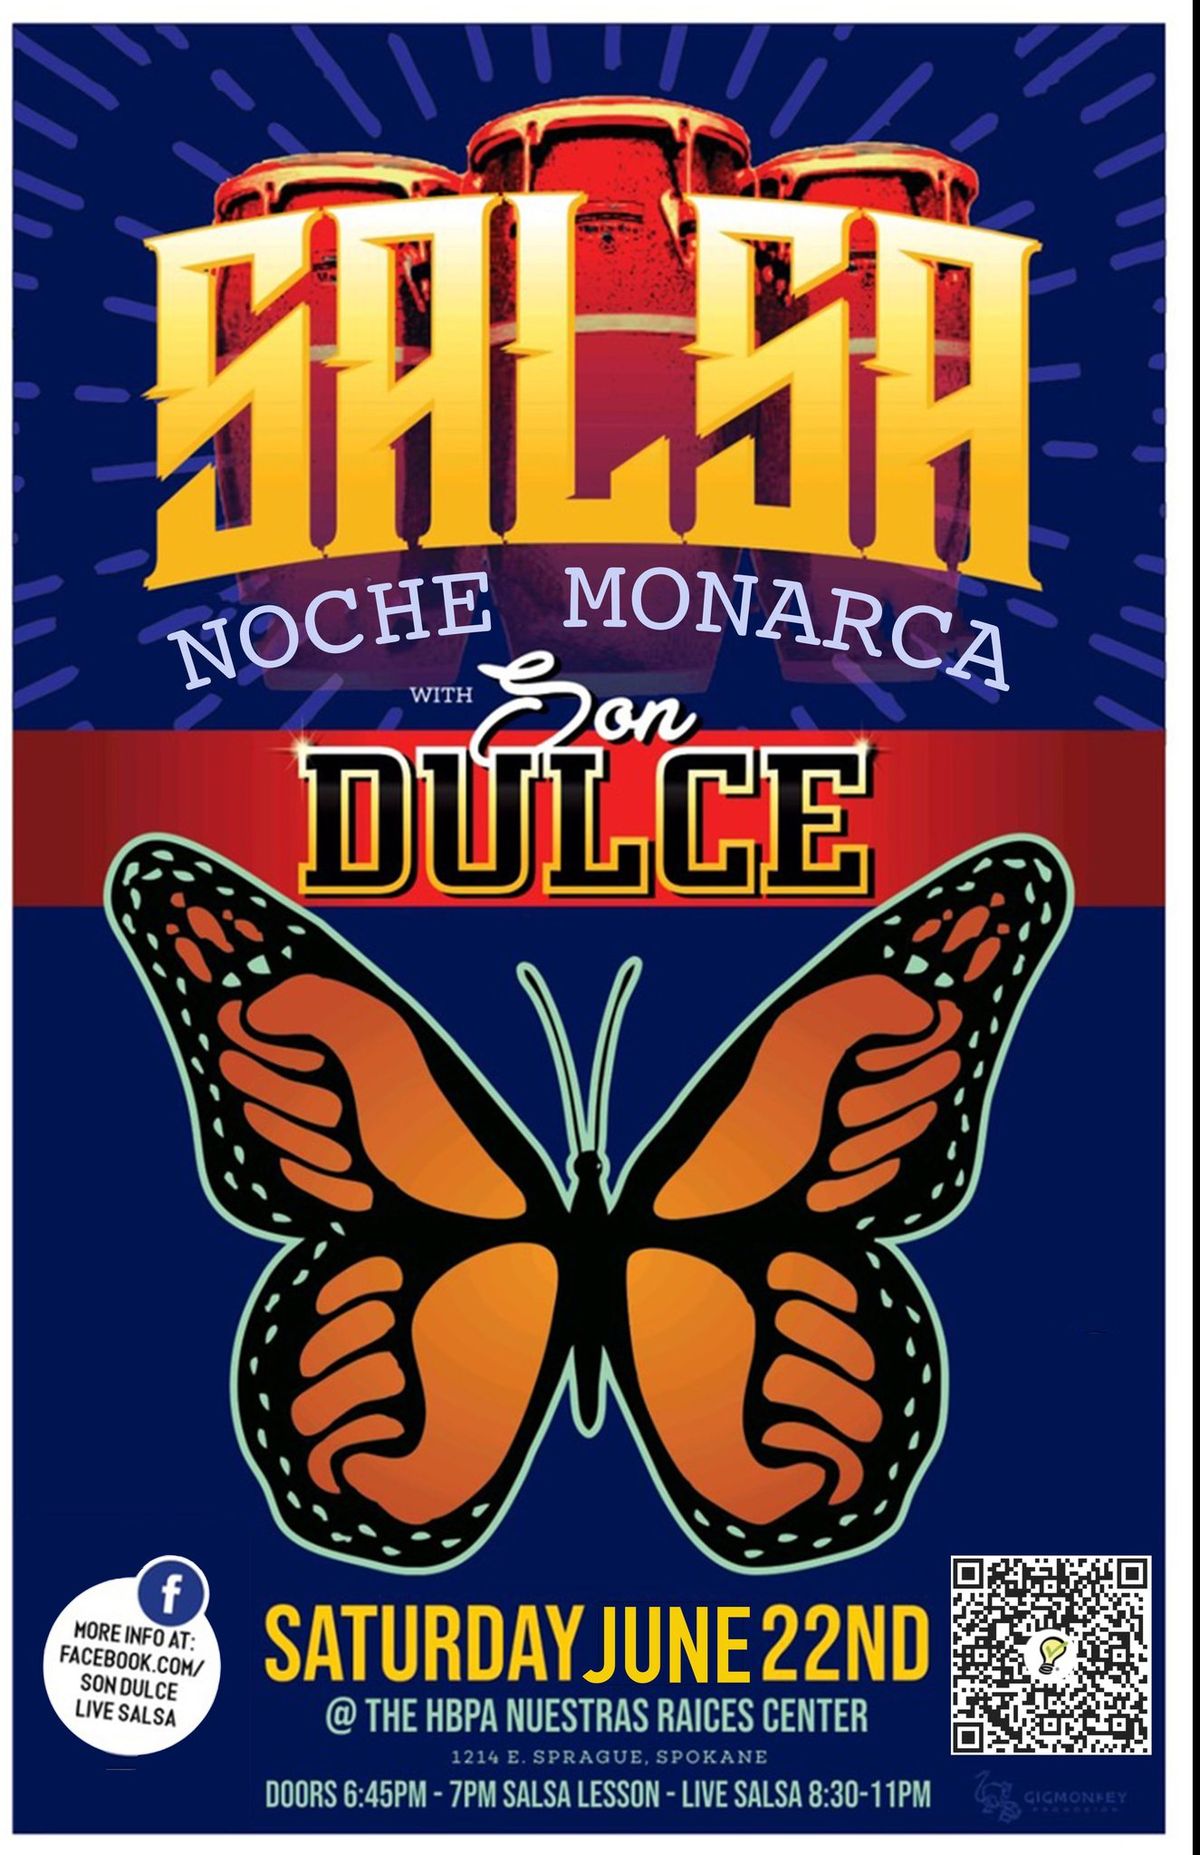 Son Dulce Live Salsa: Noche Monarca